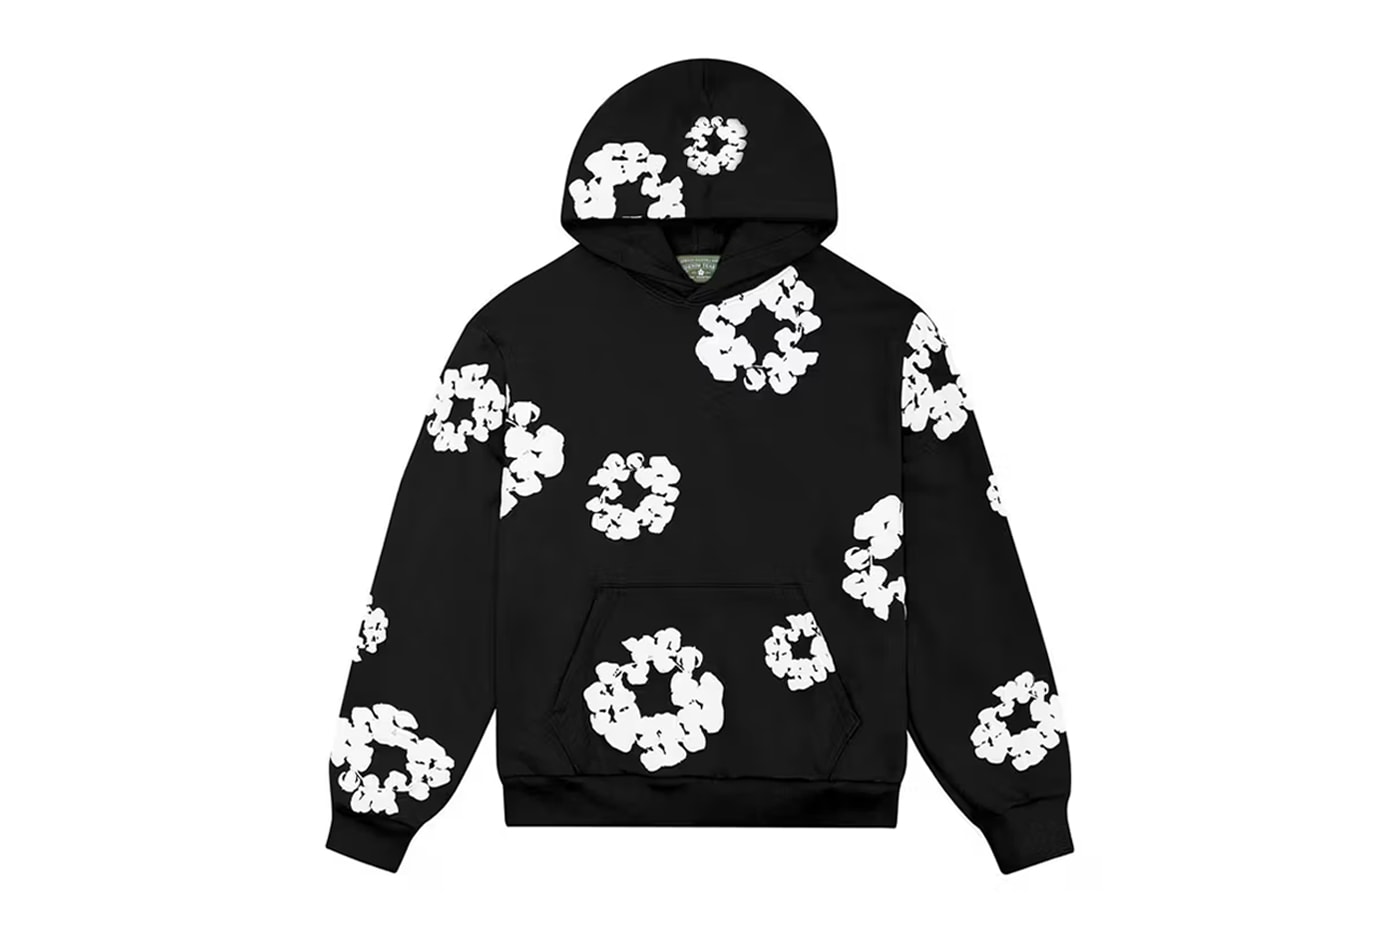 Denim Tears Unveils New "Cotton Wreath" Sweatsuit Capsule NYC LA Pop up shop collection release info address